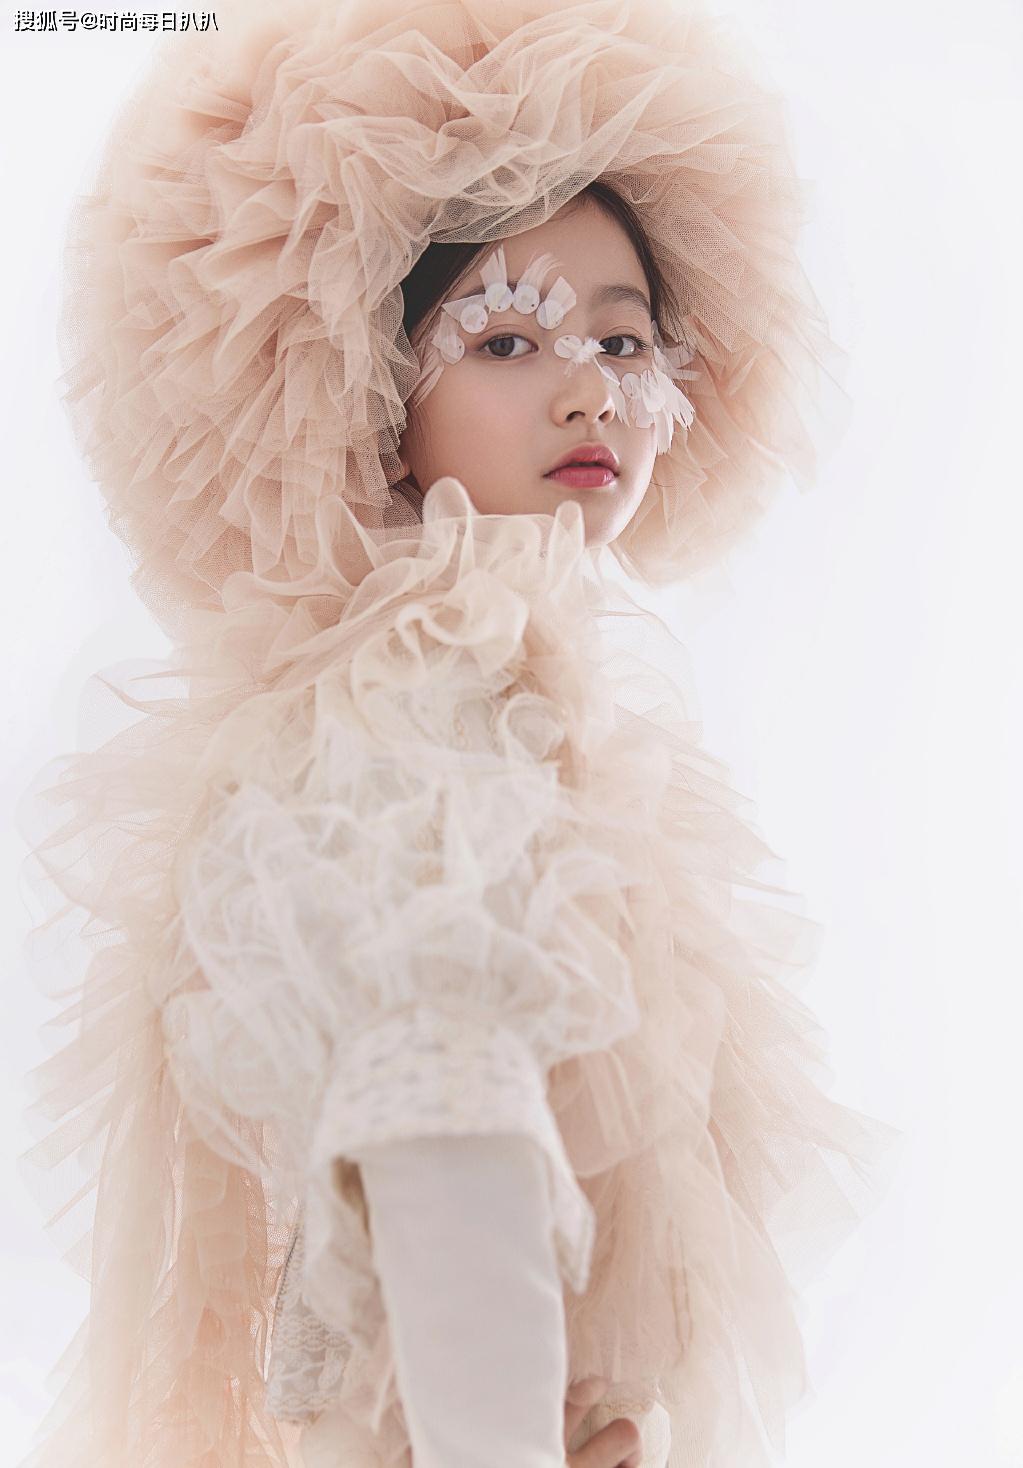 最美童星裴佳欣才11岁,就美得窒息,都可以做中国娃娃形象大使了